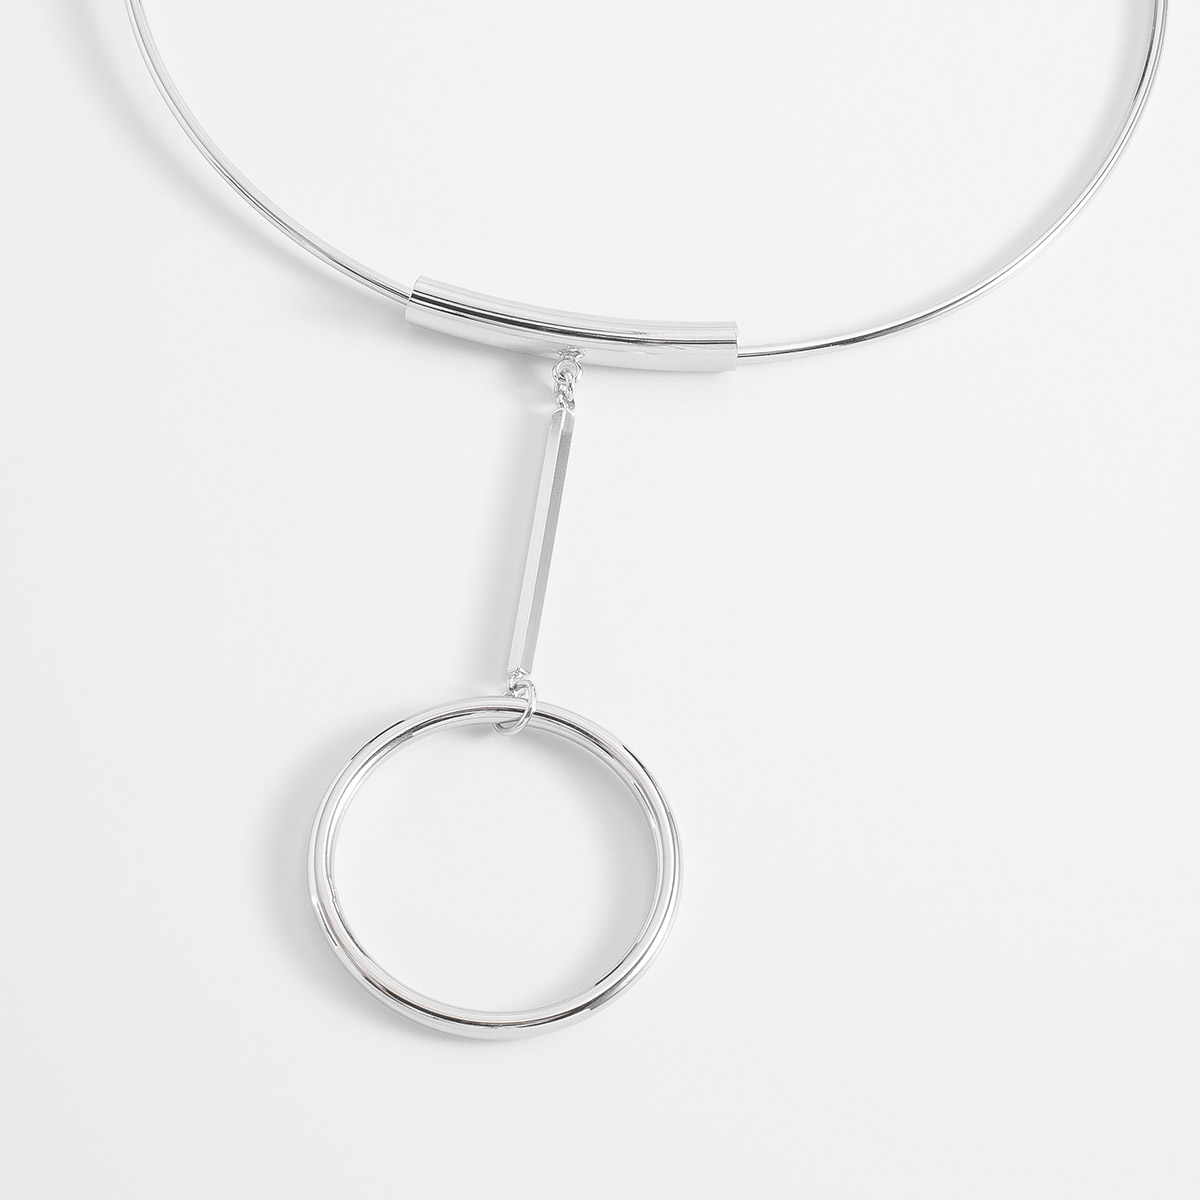 Moderno collar ajustable en baño de platino con dije de diseño geométrico.
-        Collar 
-        Medida ajustable
-        Baño de Platino
